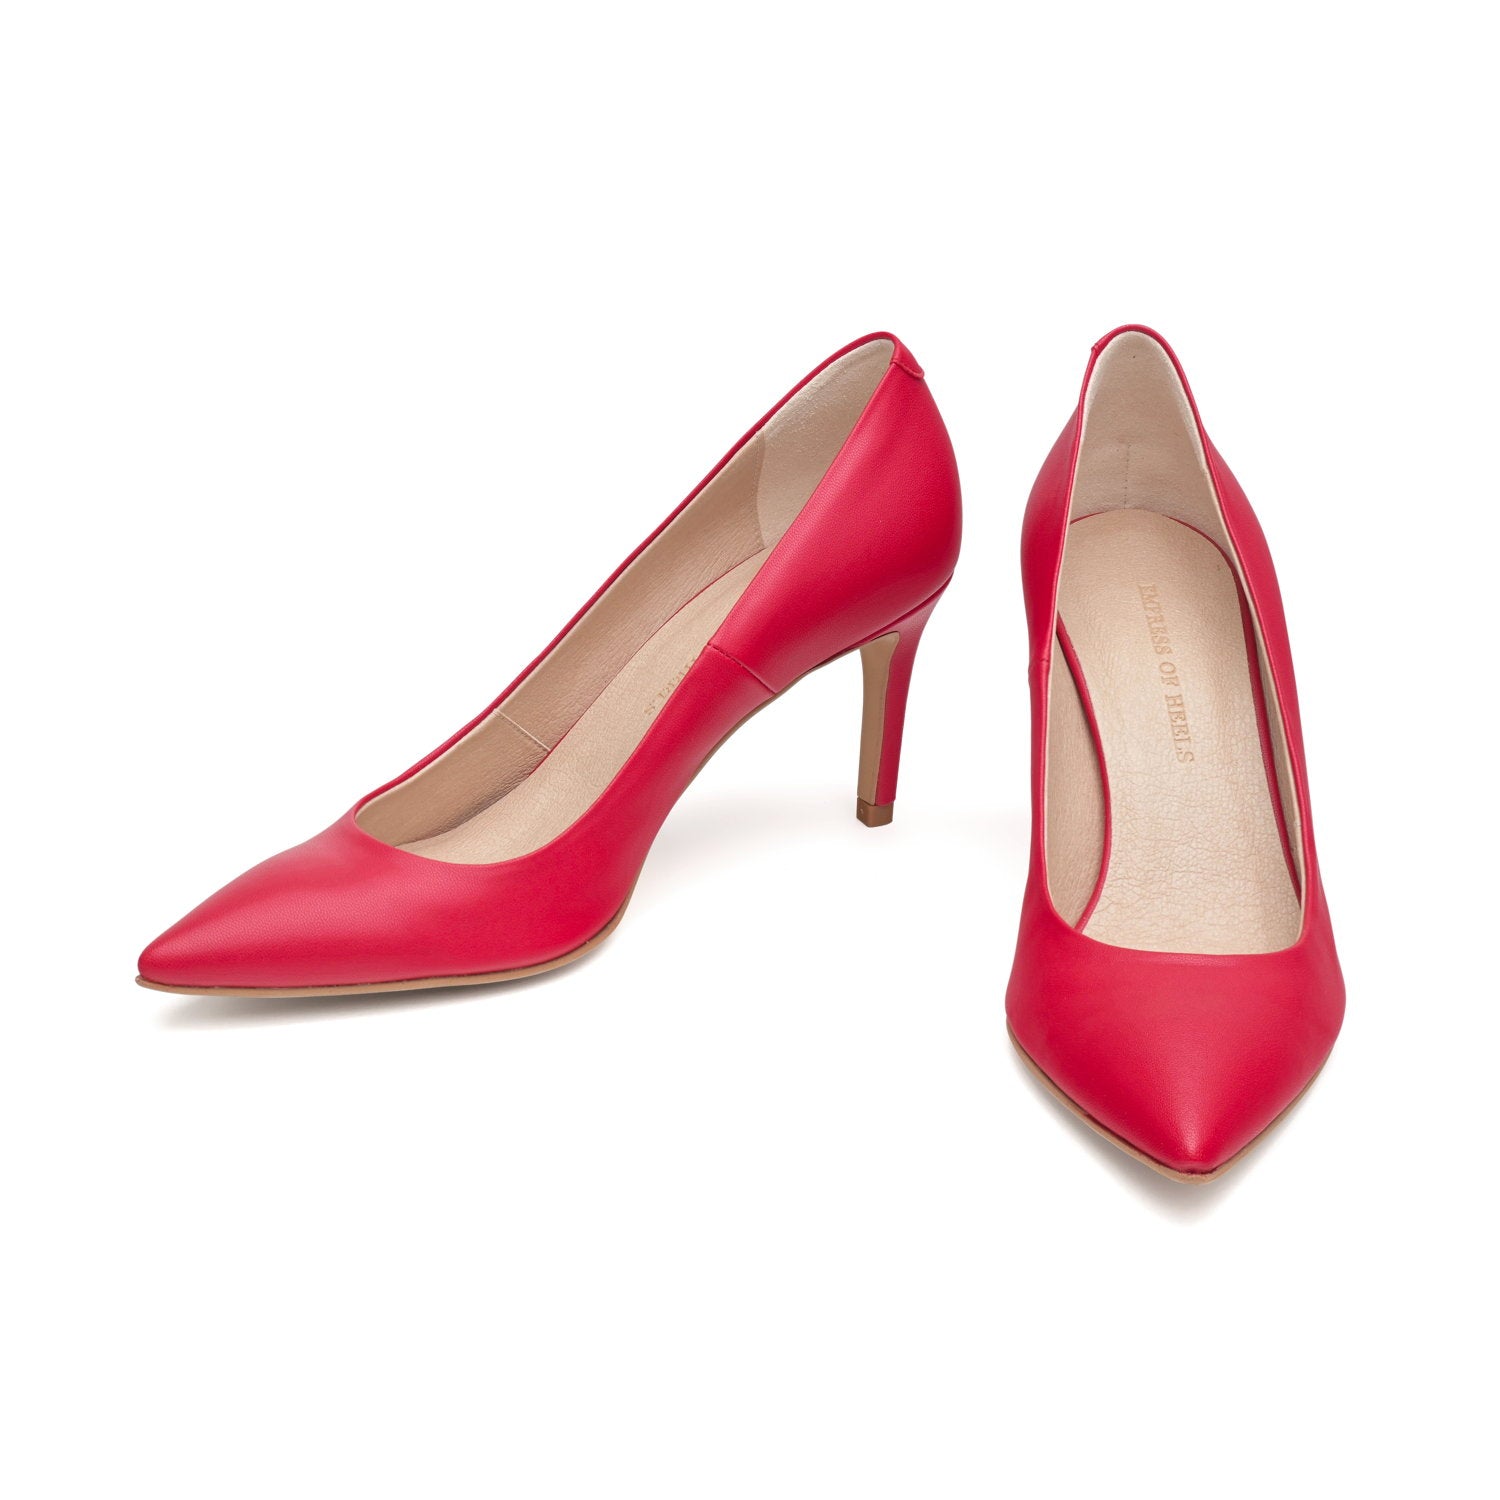 The Red - vegan 70mm heels